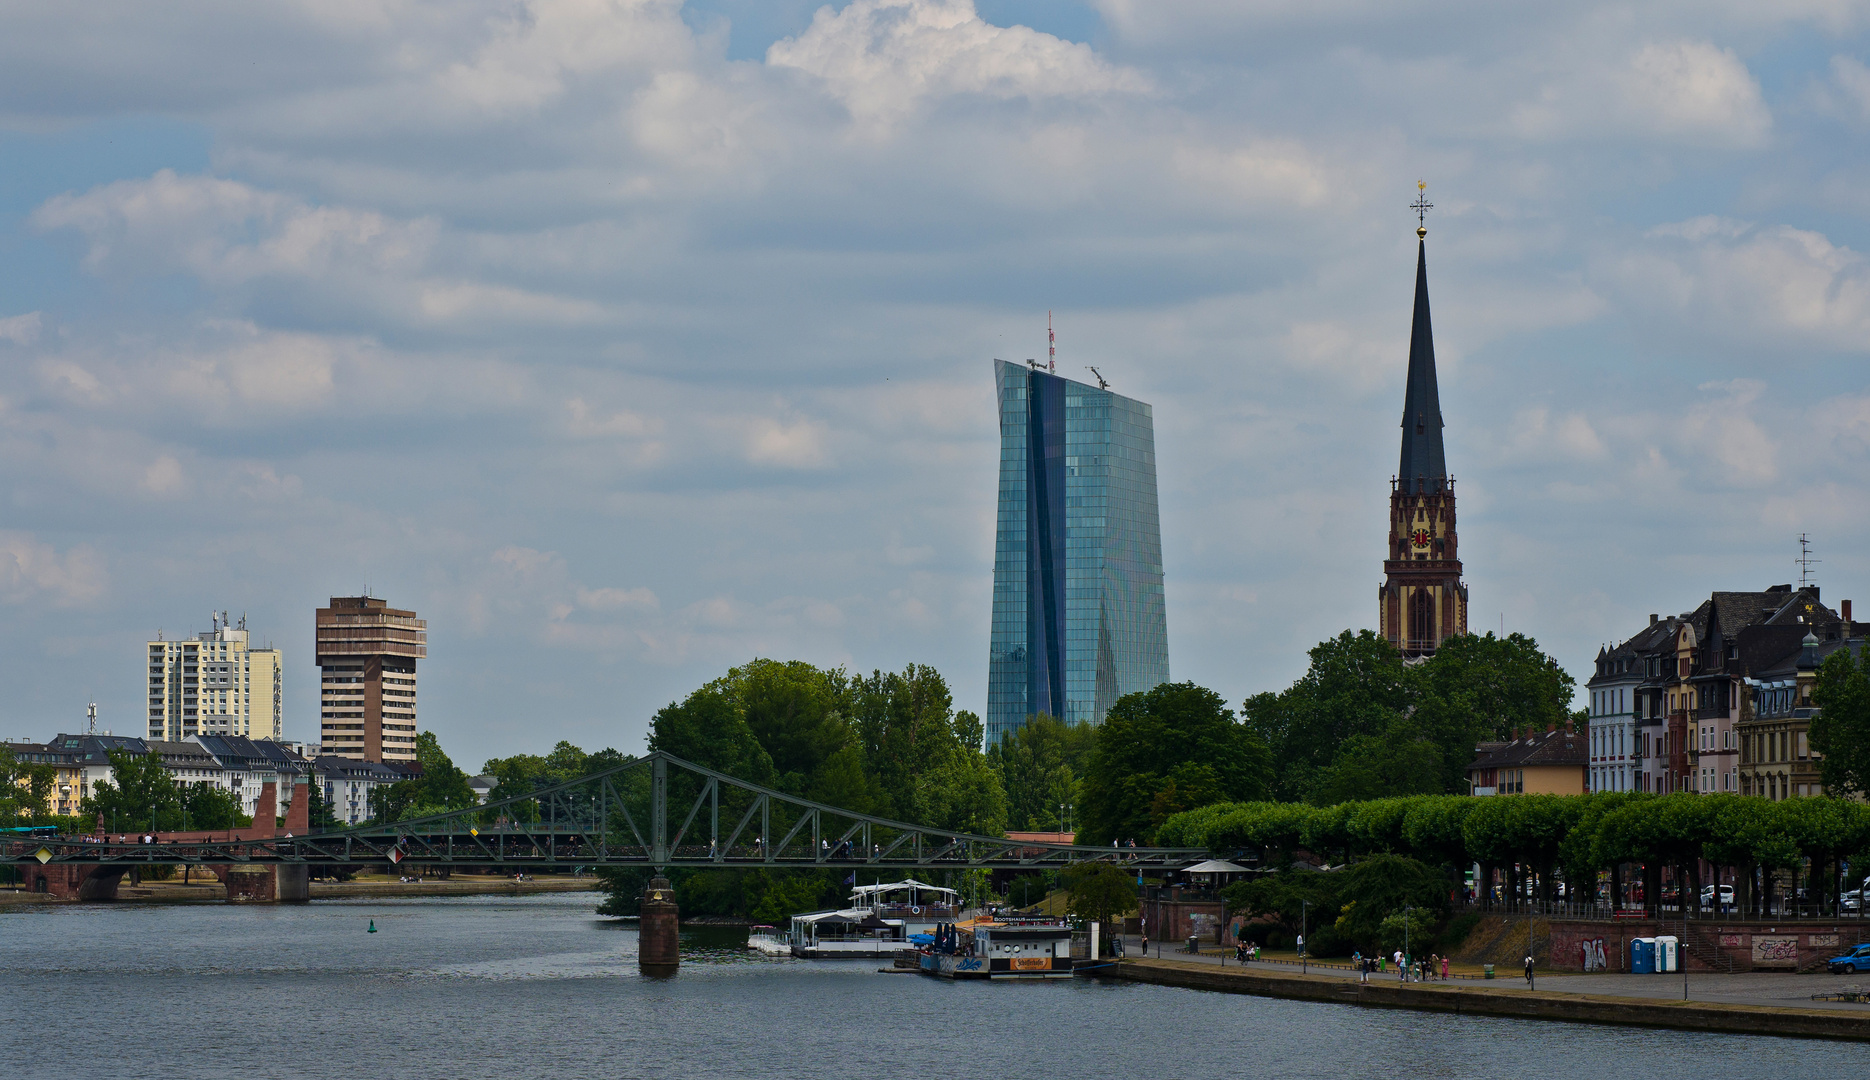 Frankfurt, Skyline